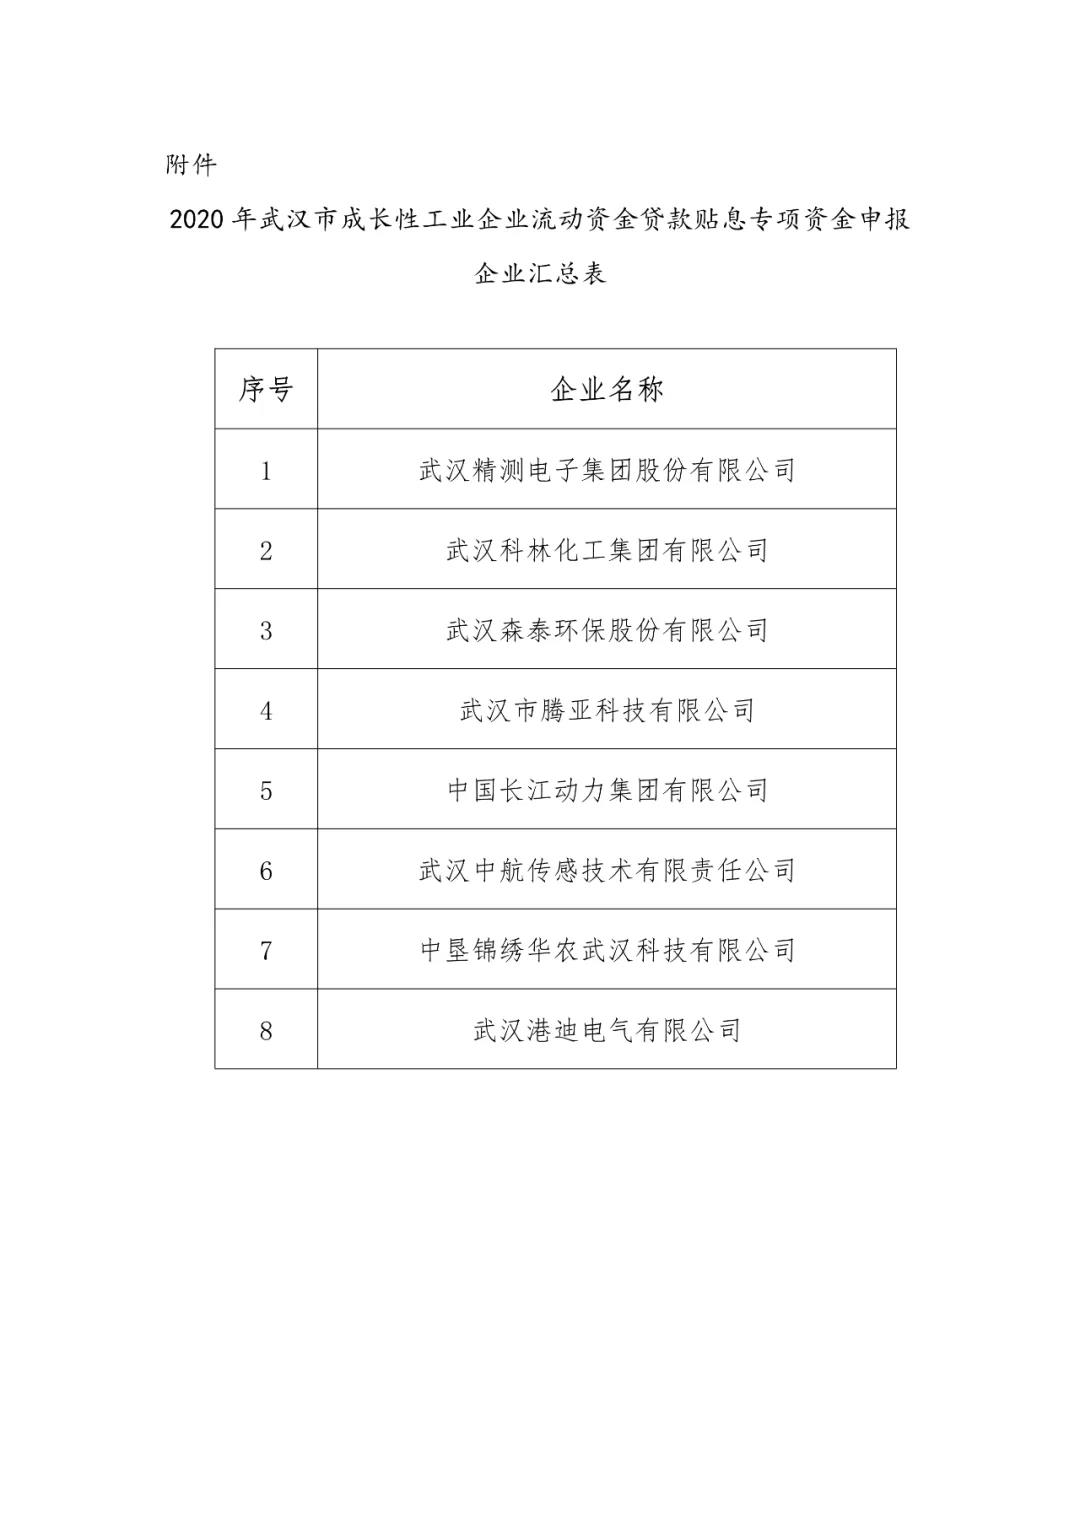 关于洪山区企业申报2020年武汉市成长性工业企业流动资金贷款贴息专项资金情况的公示.jpg